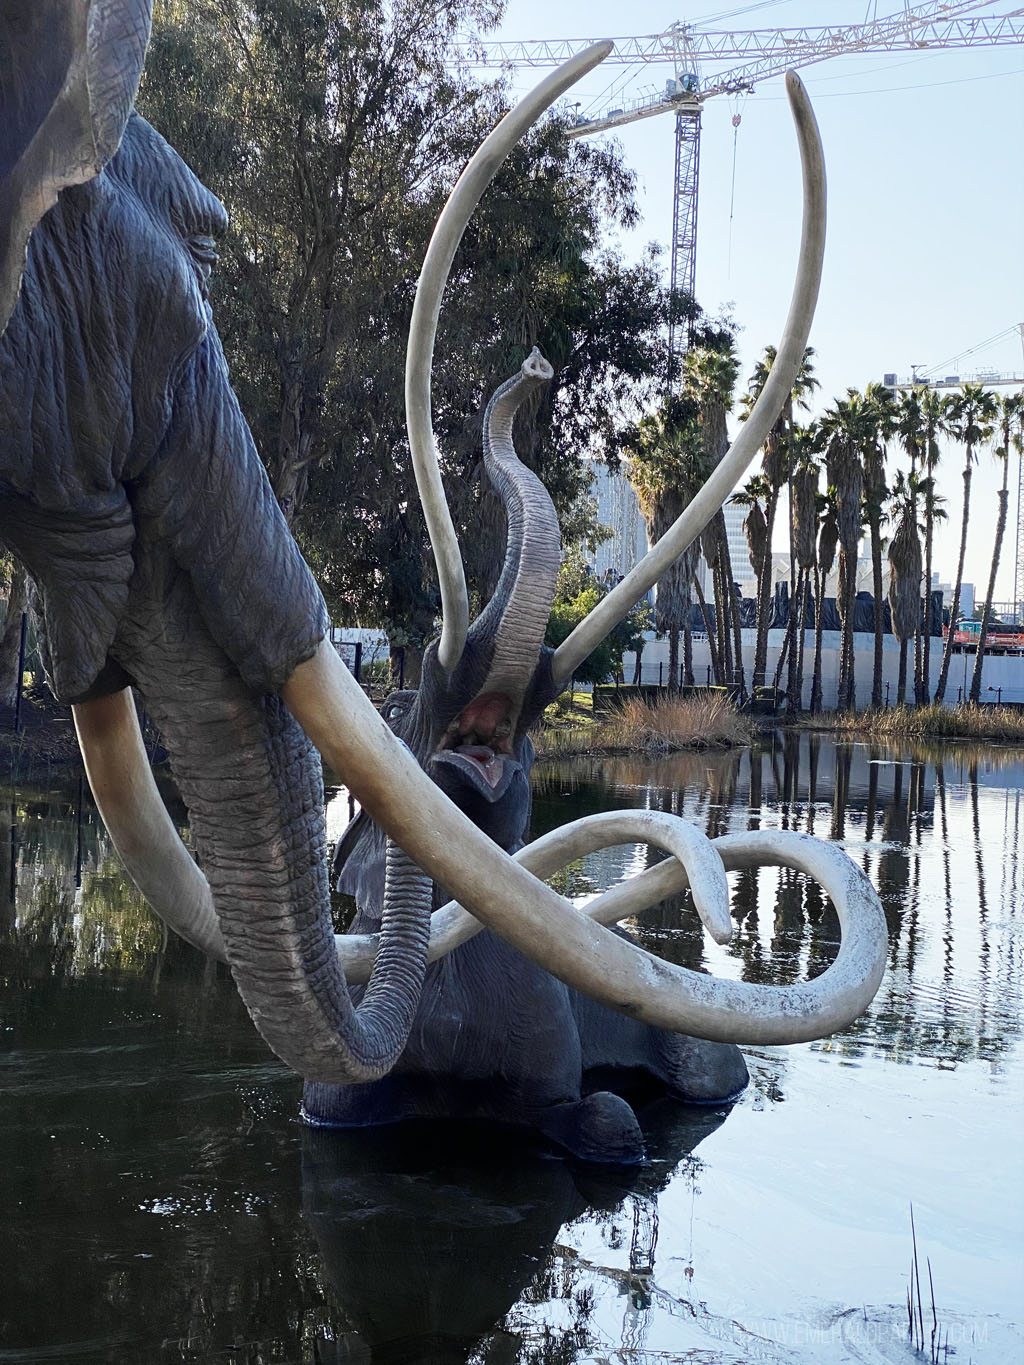 sculptures of mammoths at La Brea Tar Pits in LA